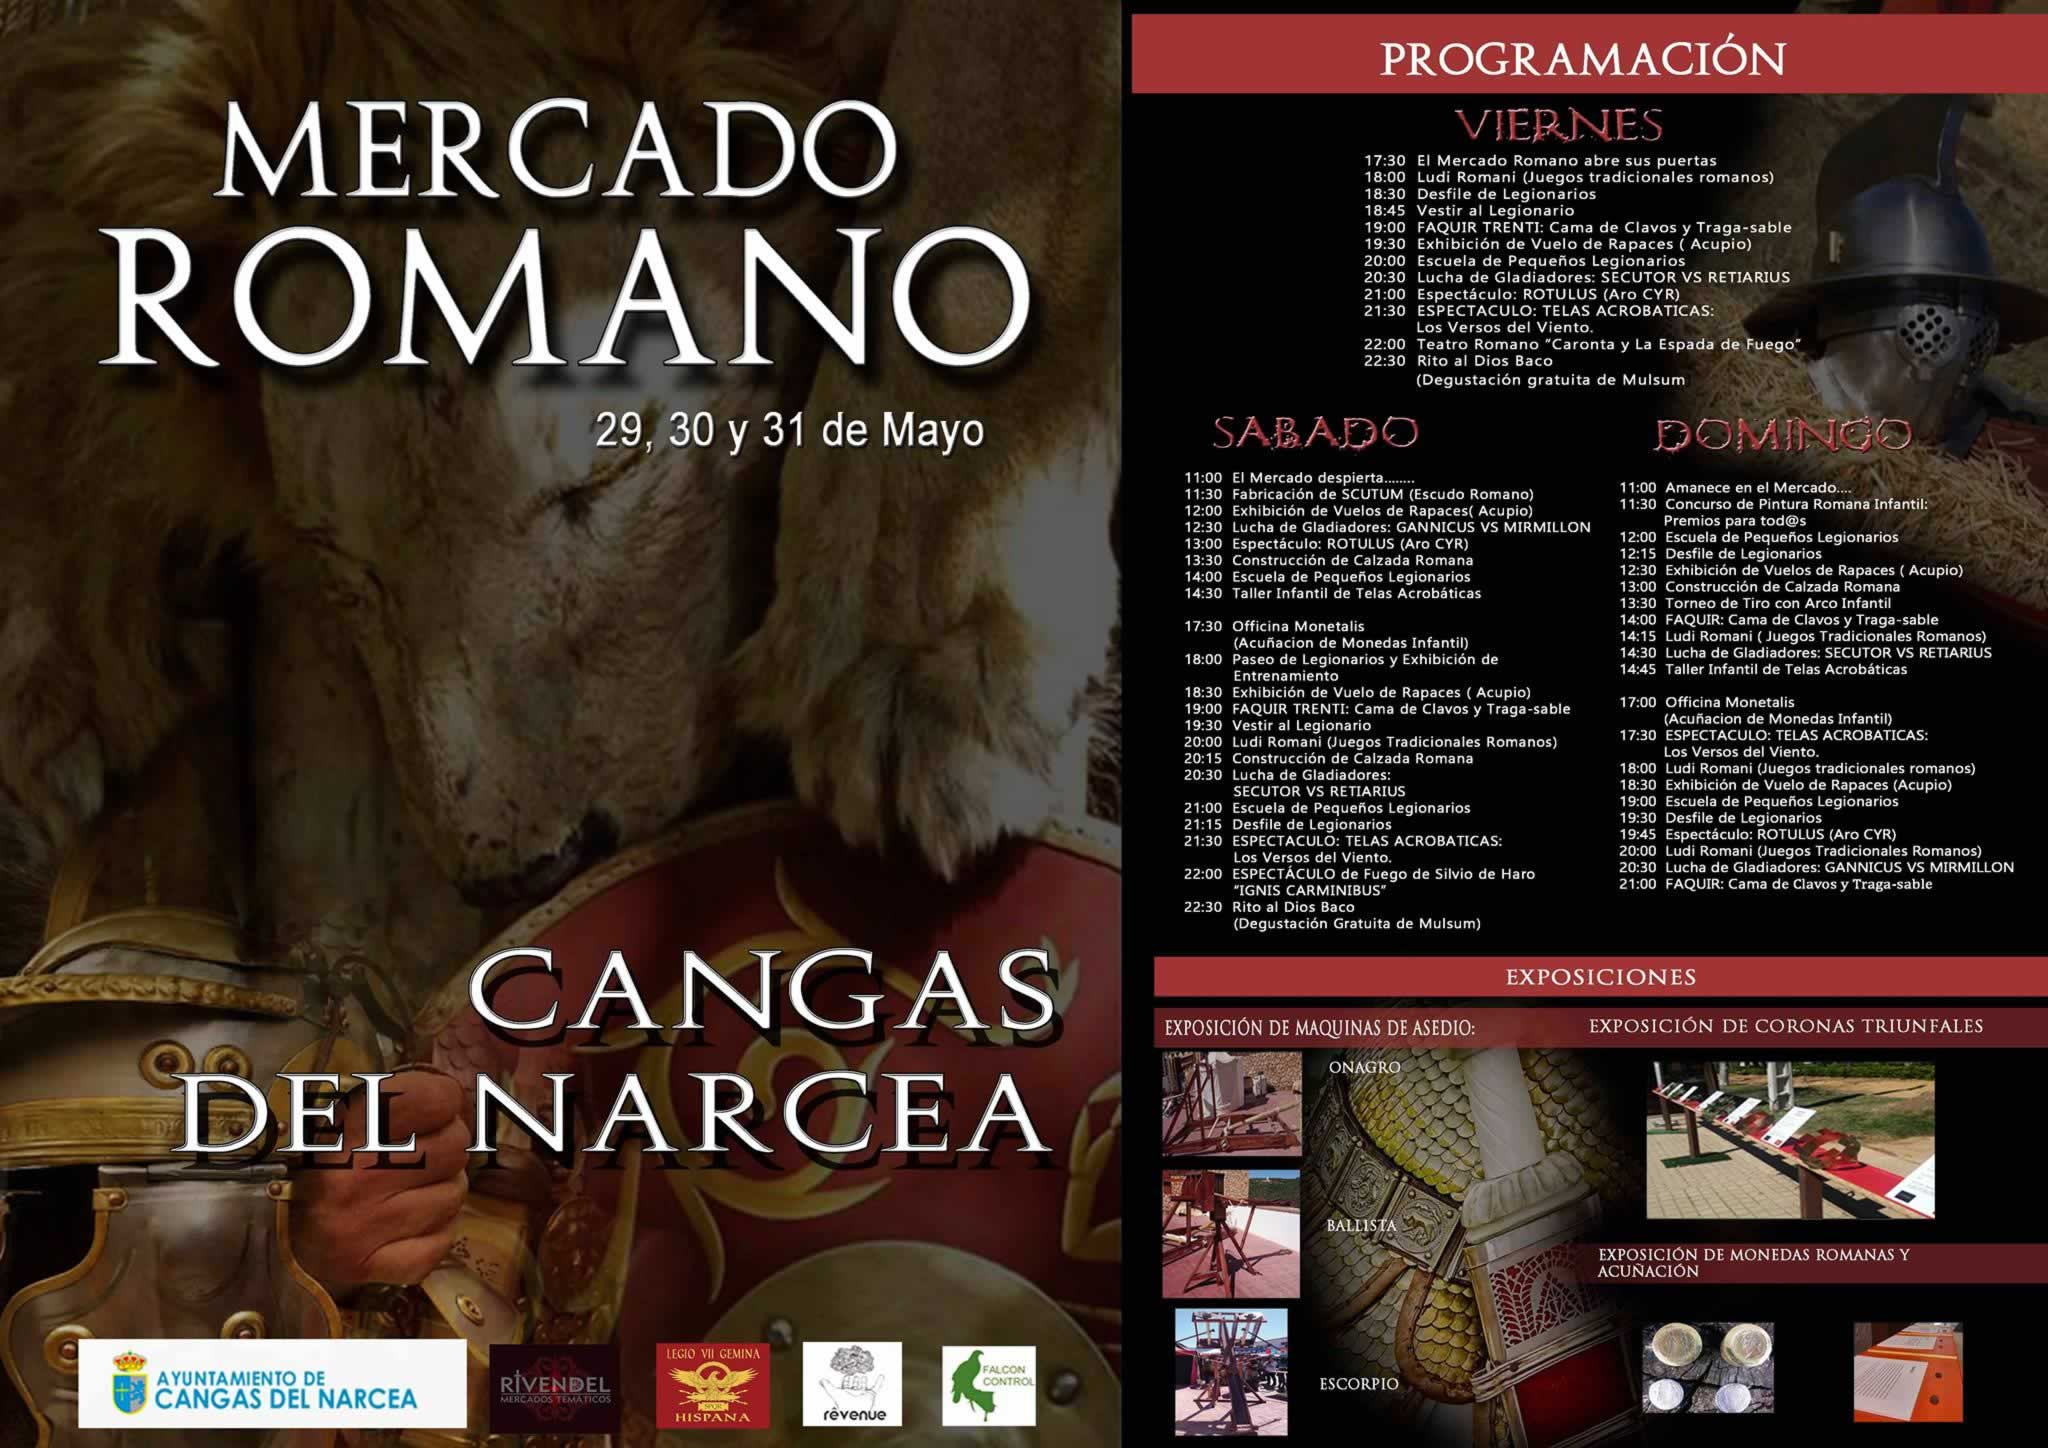 Programa completo del Mercado Romano en Cangas del Narcea, Asturia del 29 al 31 de Mayo del 2015